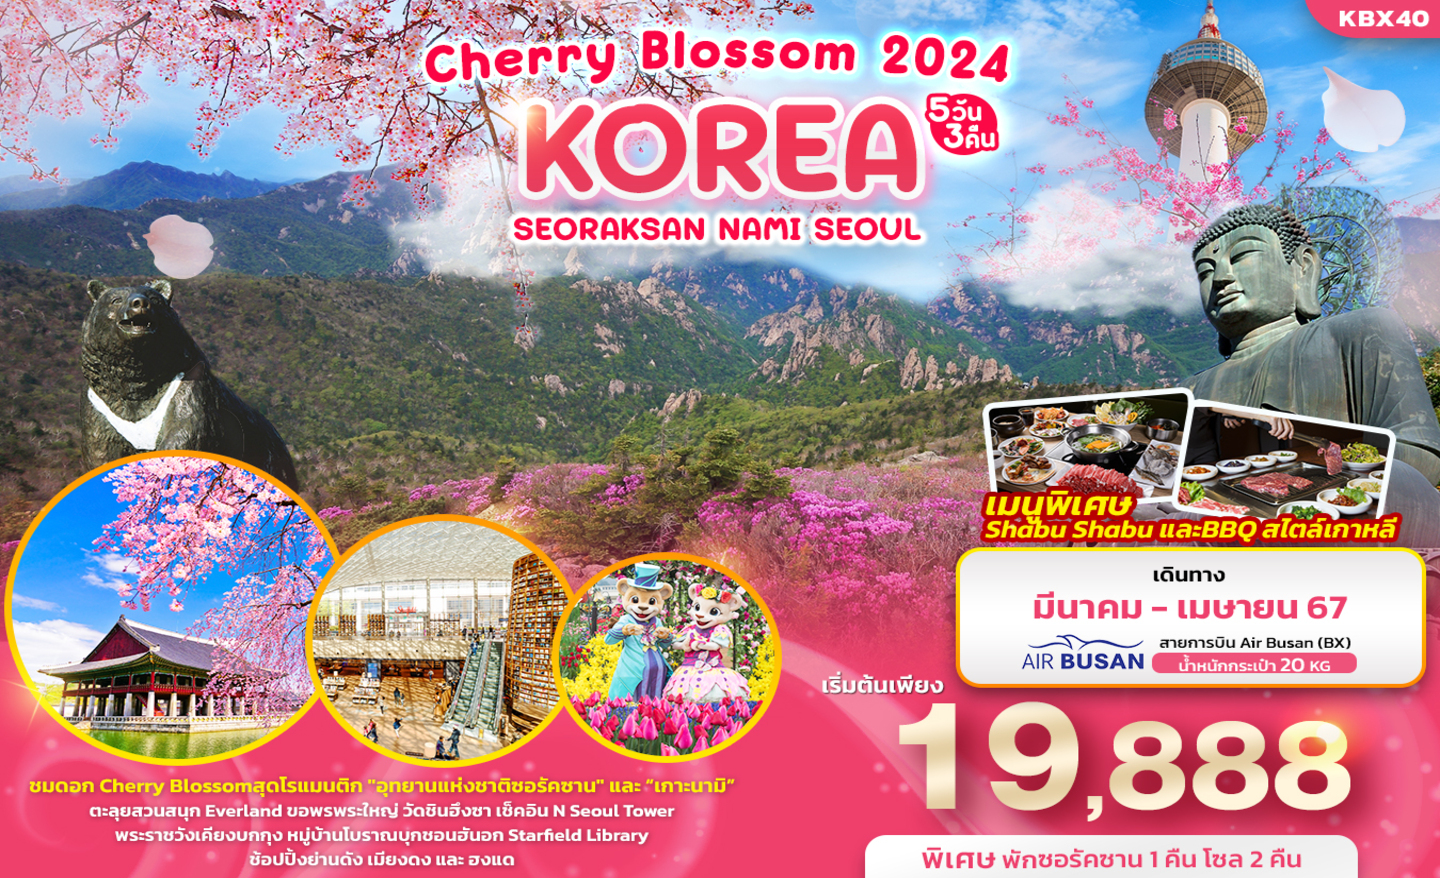 ทัวร์เกาหลี Korea Cherry Blossom 2024 (มี.ค.-เม.ย.67)